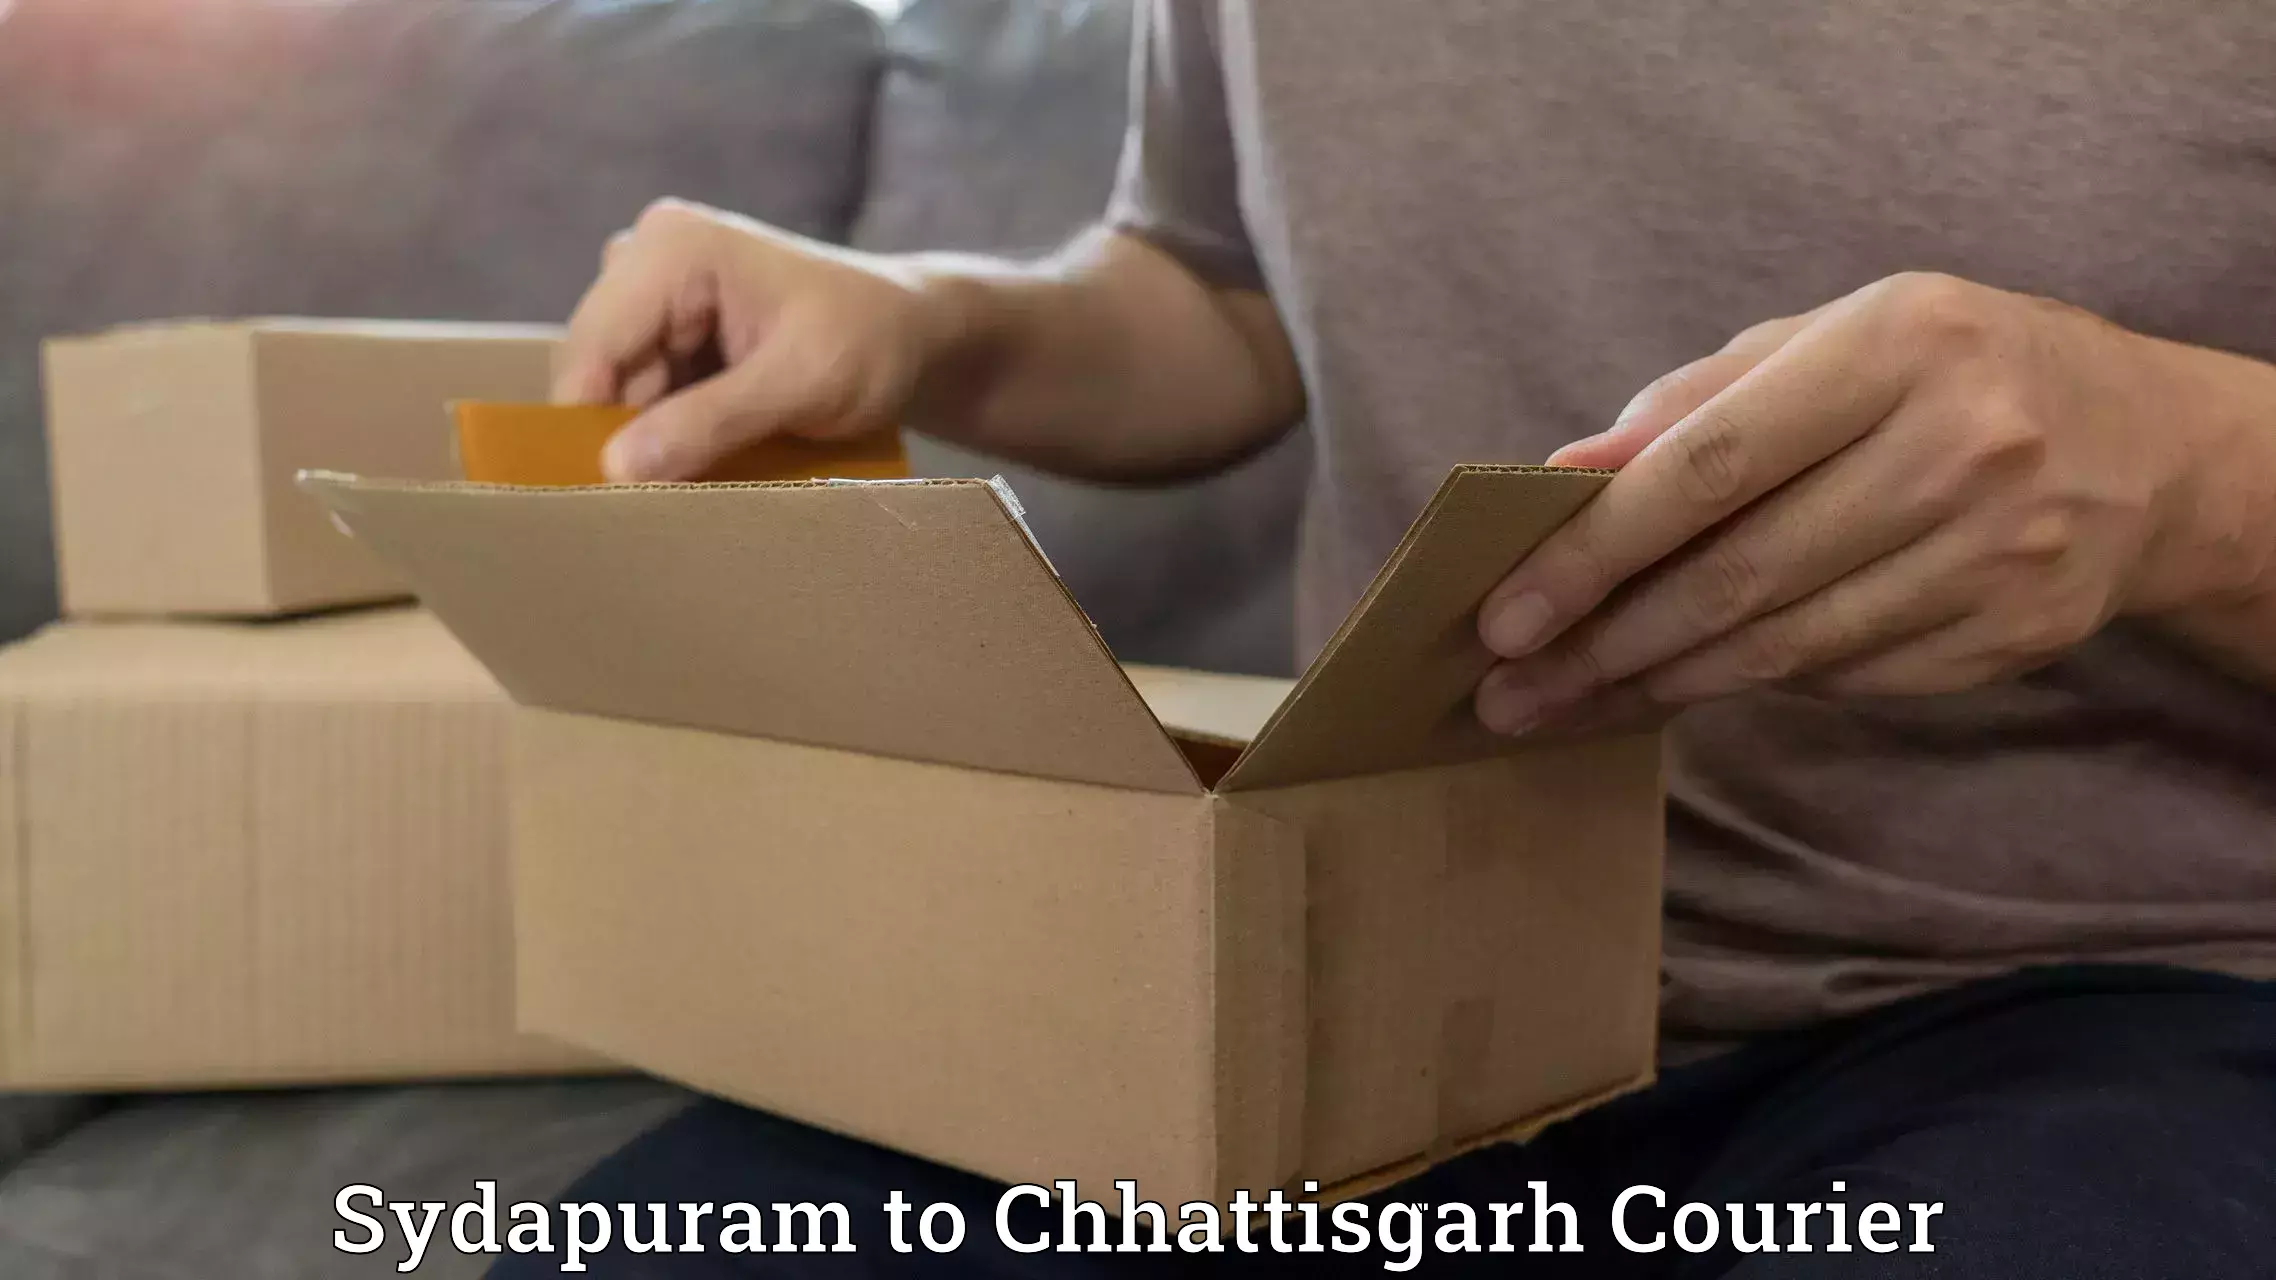 Premium courier solutions Sydapuram to Chhattisgarh